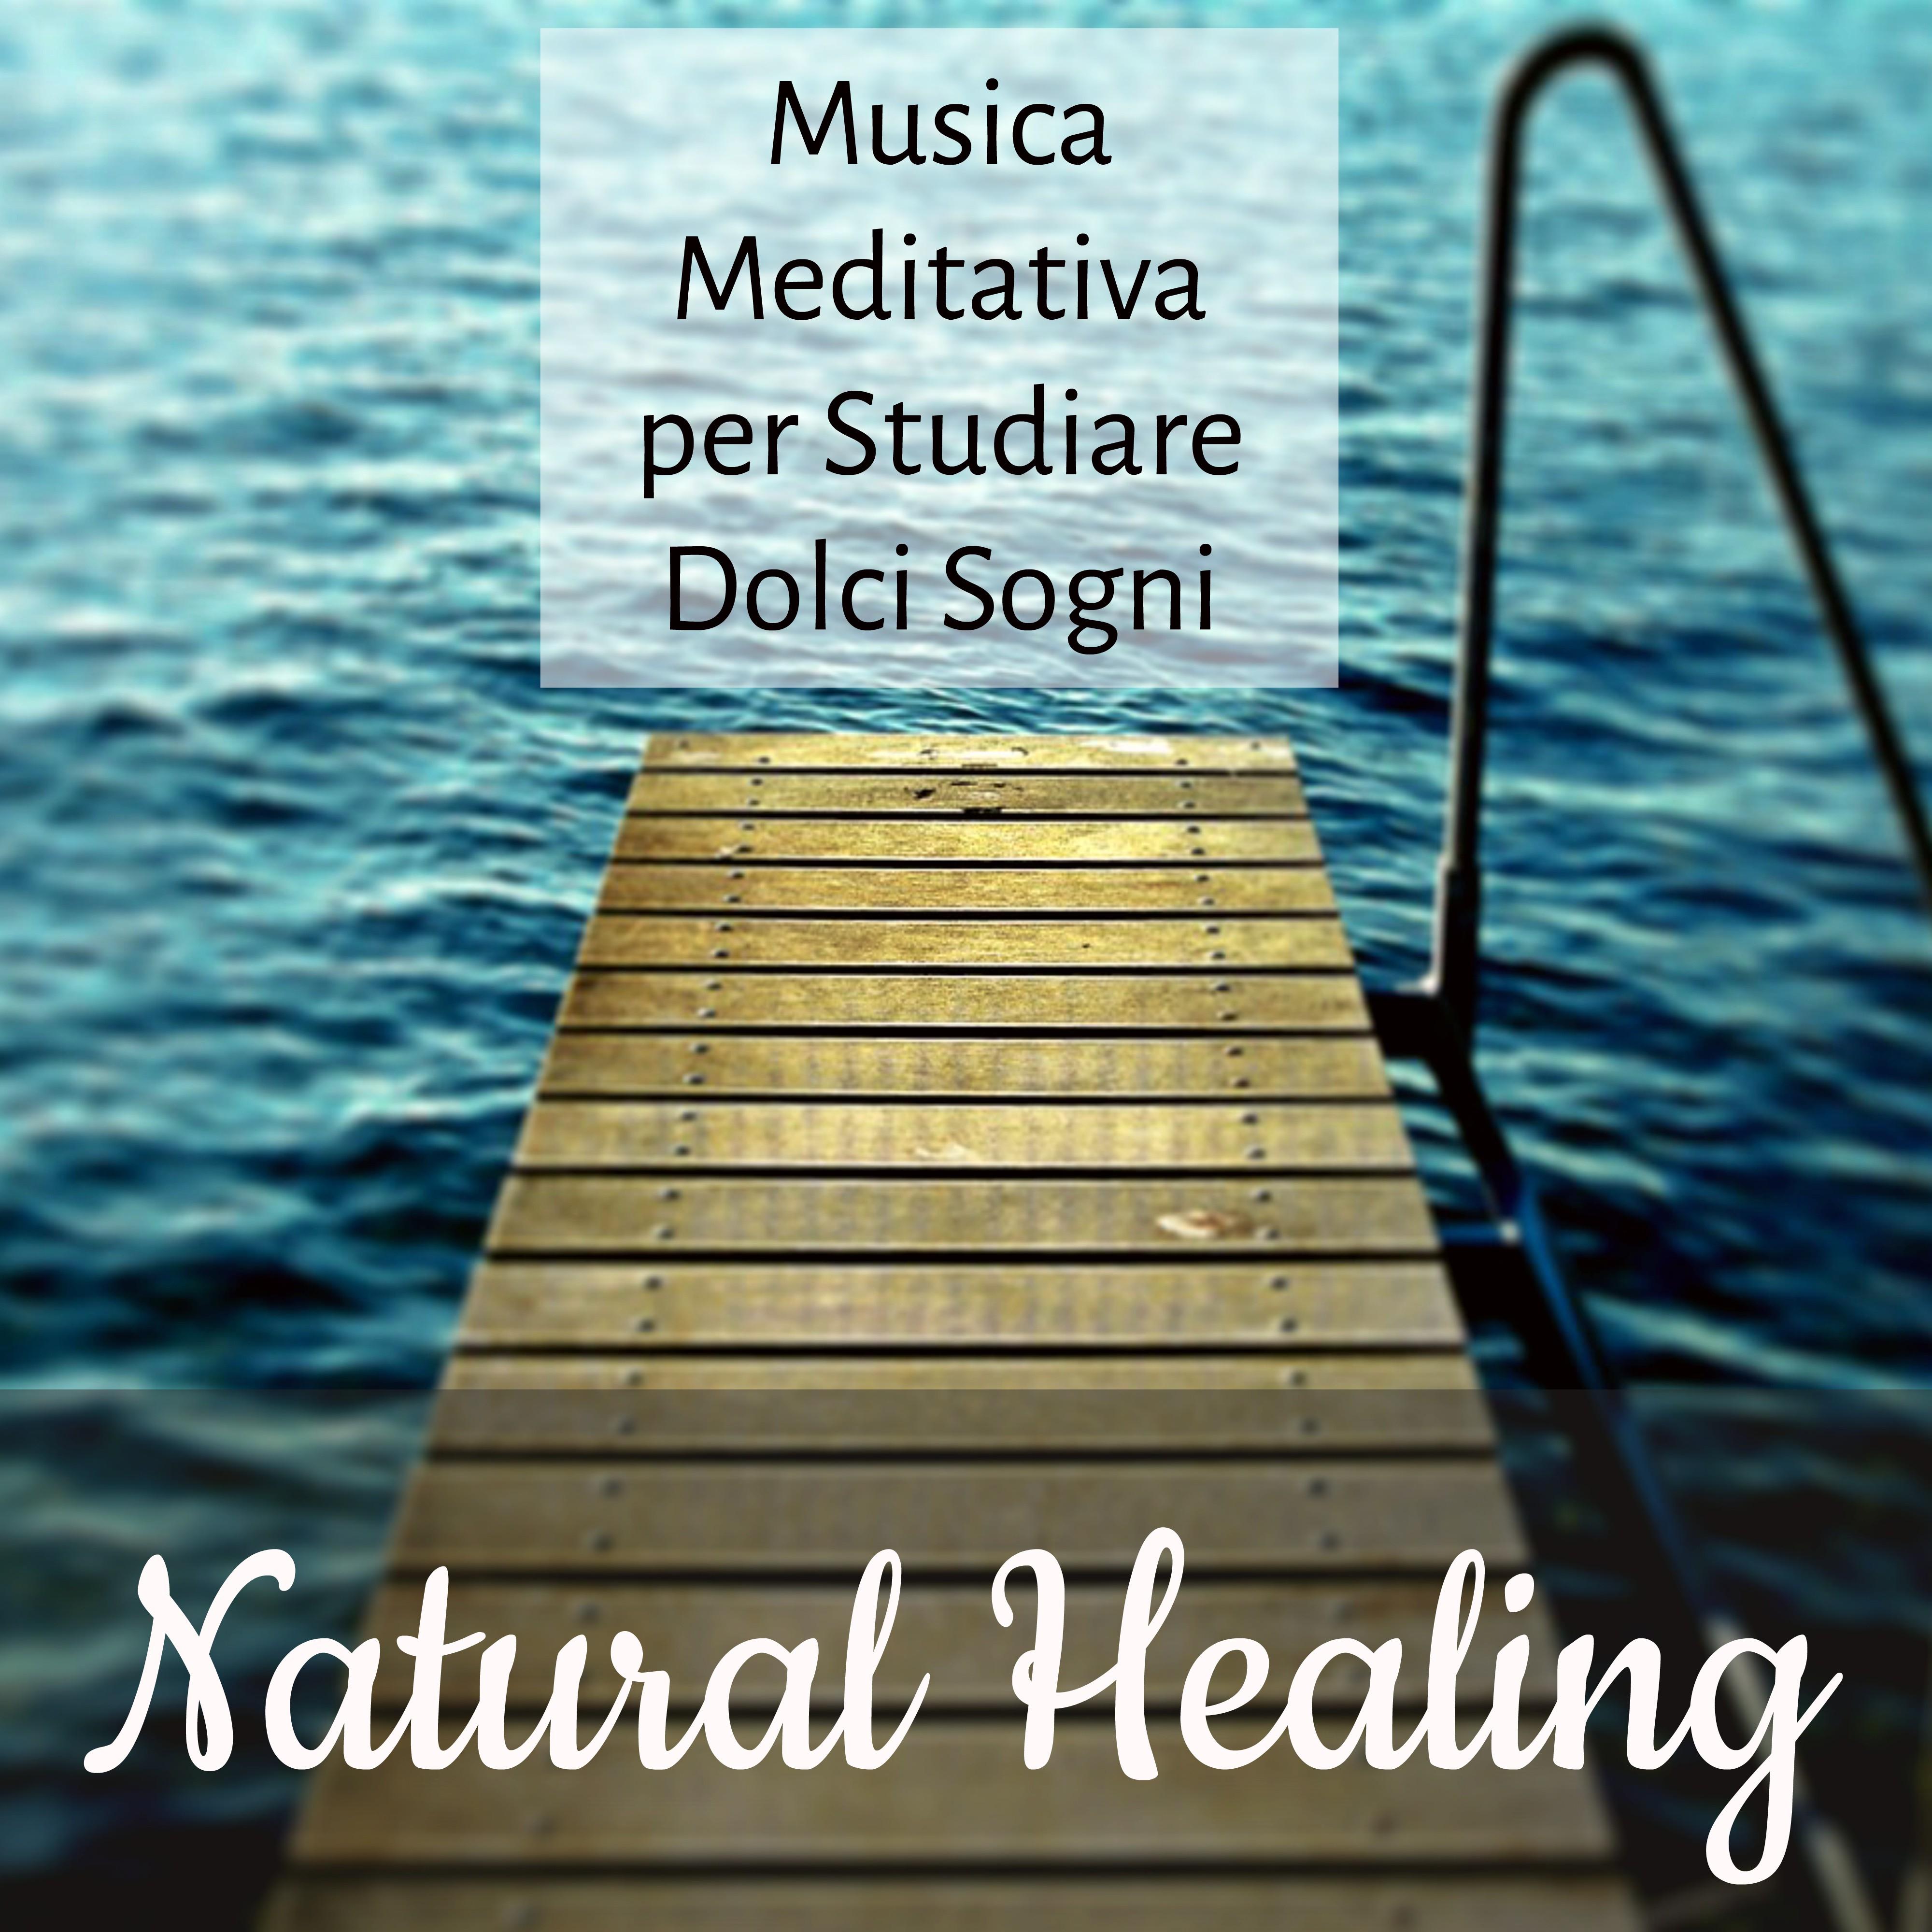 Natural Healing - Musica Meditativa per Studiare Dolci Sogni Tecniche di Meditazione per Gestire lo Stress con Suoni della Natura Strumentali Rilassanti